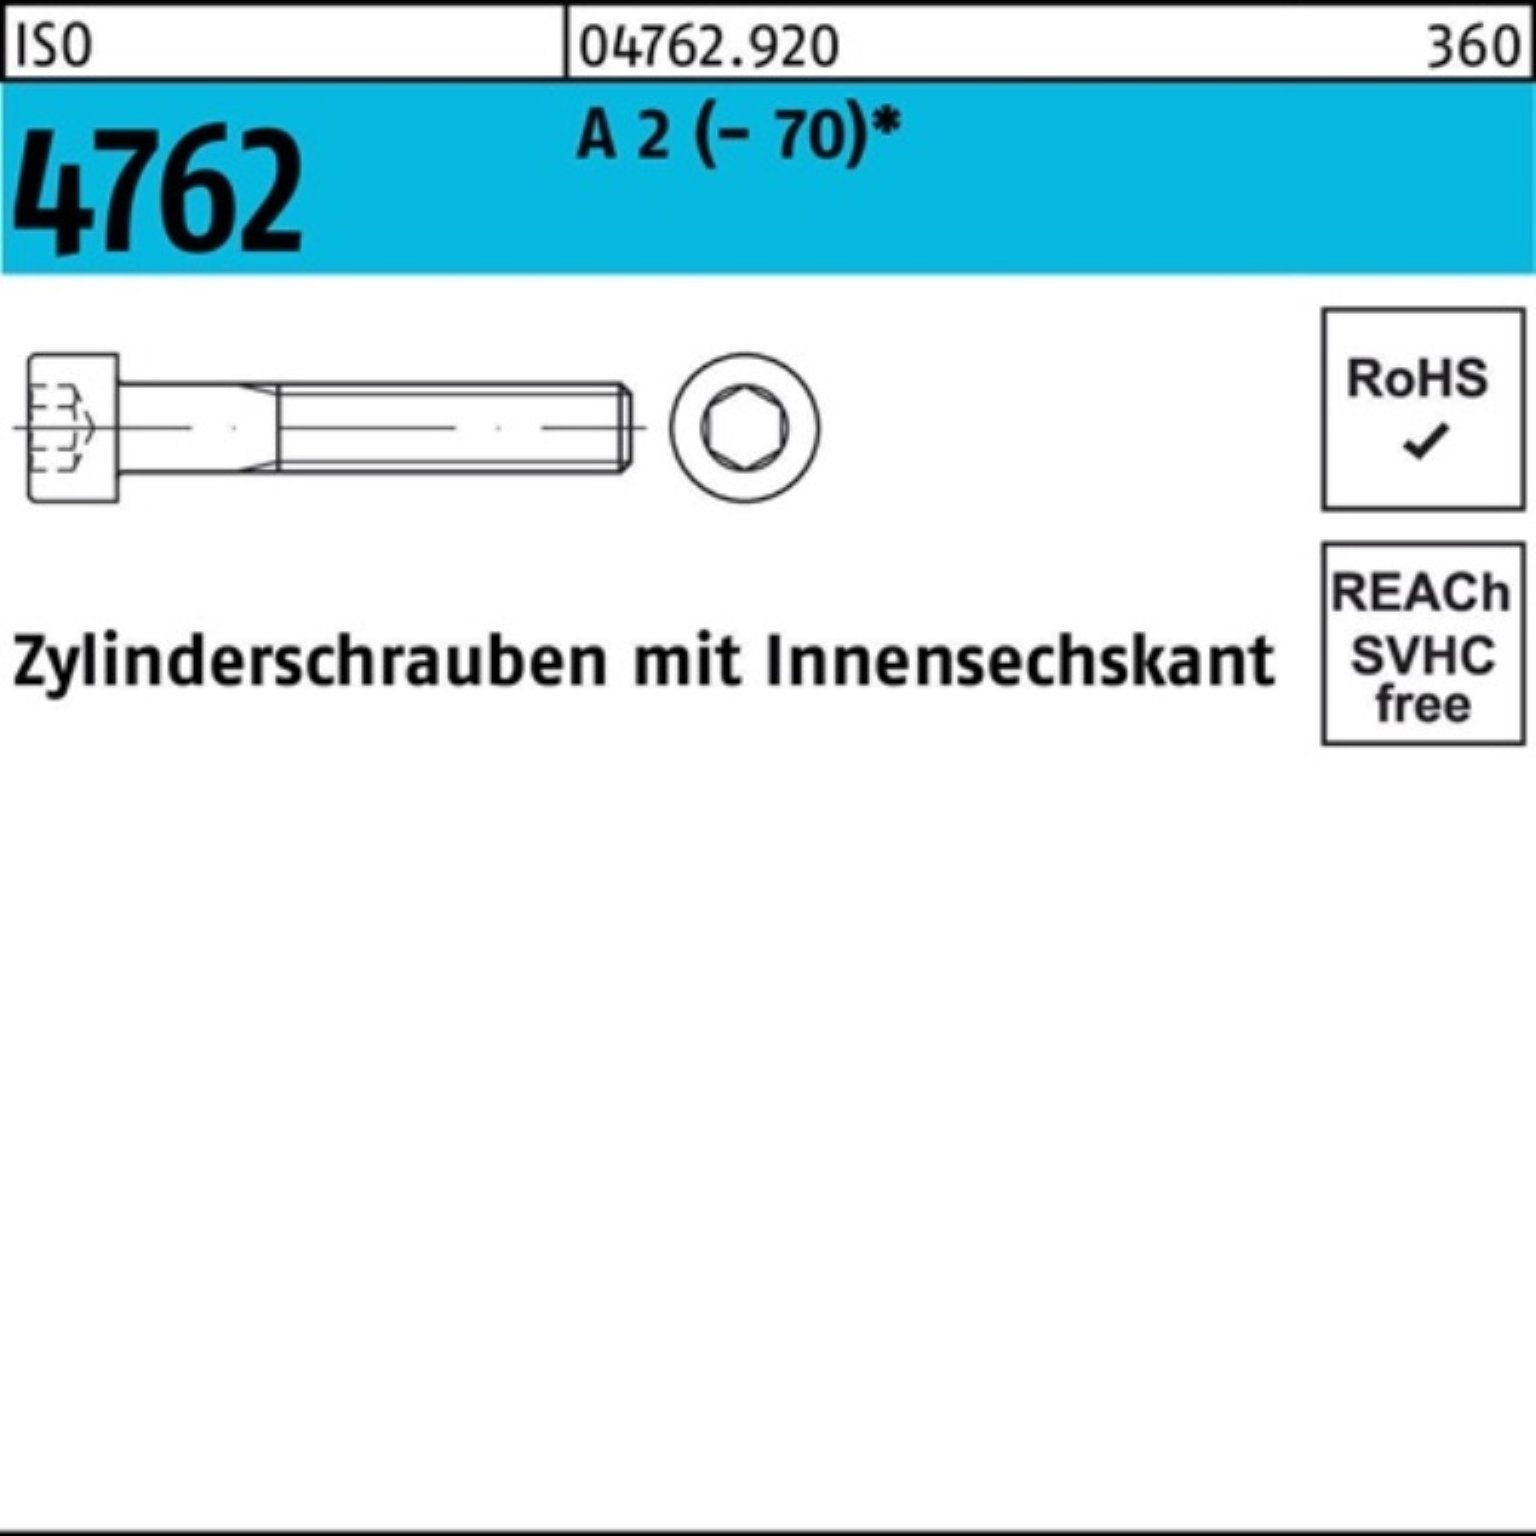 100 Reyher A Innen-6kt (70) M5x Zylinderschraube ISO S 35 2 Pack Zylinderschraube 4762 100er